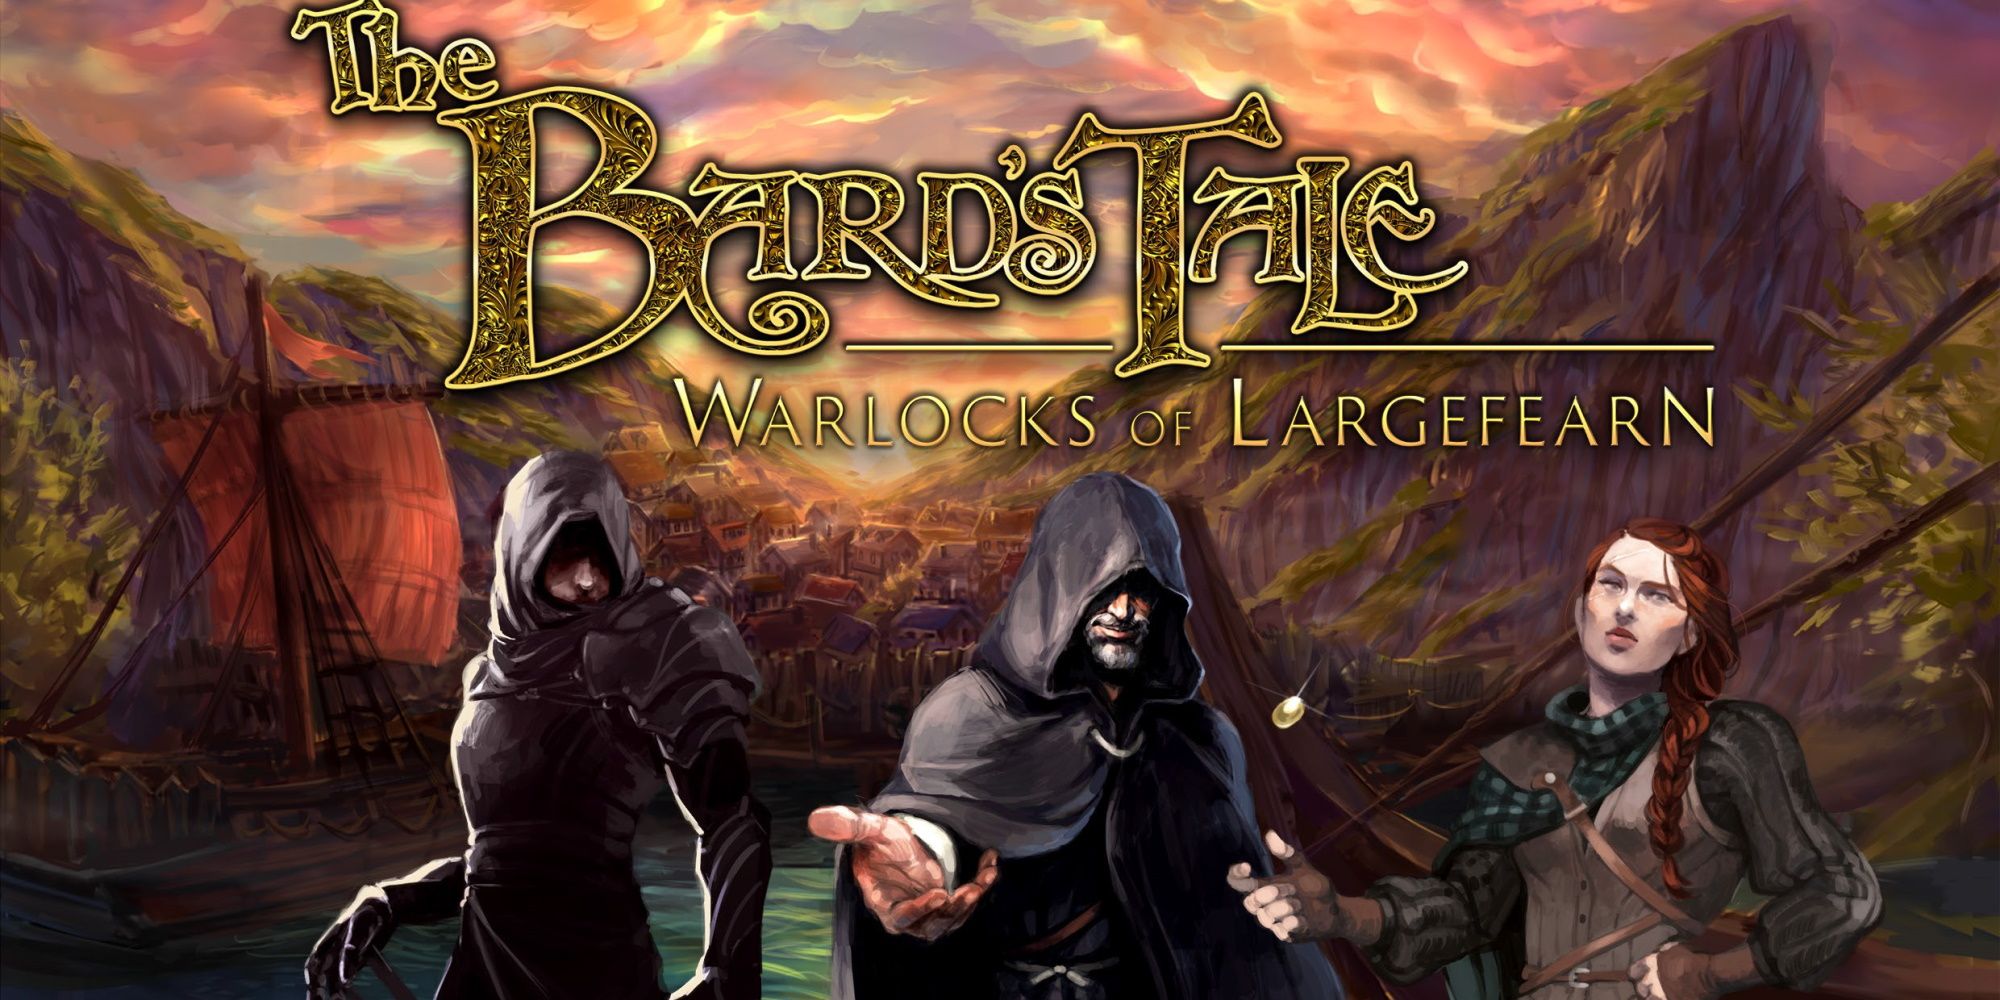 The Bard’s Tale – Warlocks of Largefearn